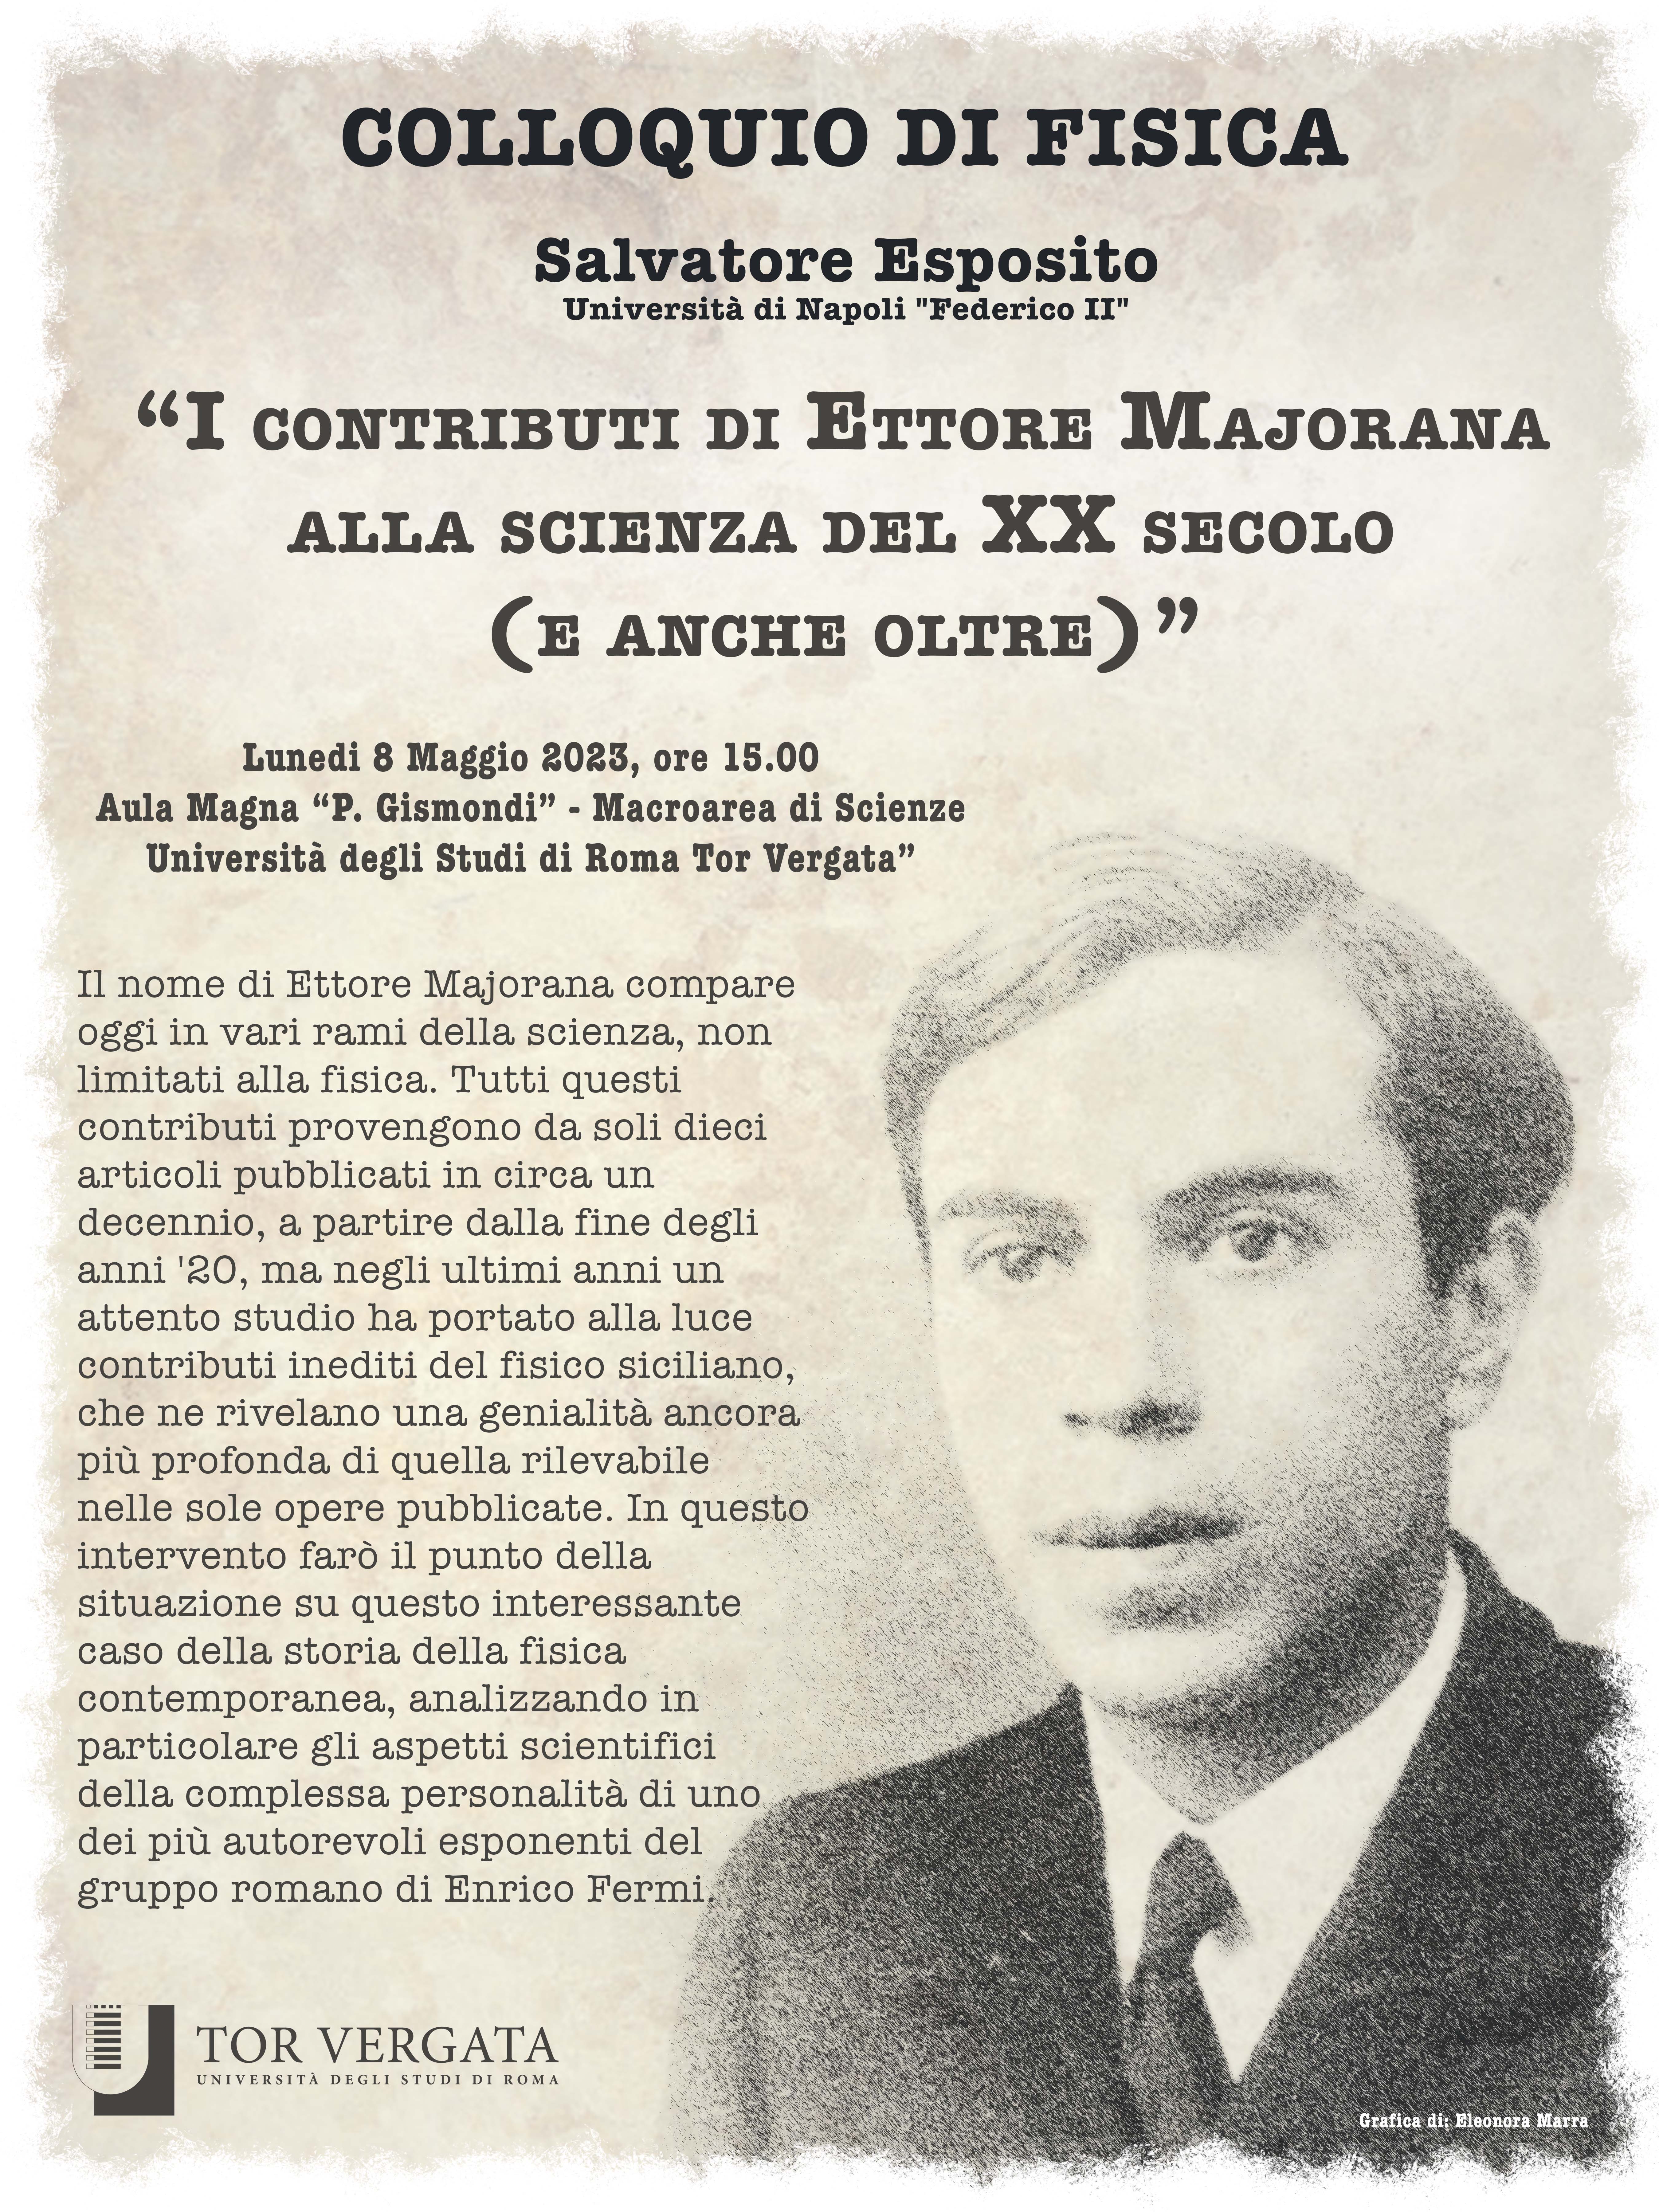 Colloquio “I contributi di Ettore Majorana alla scienza del XX secolo”